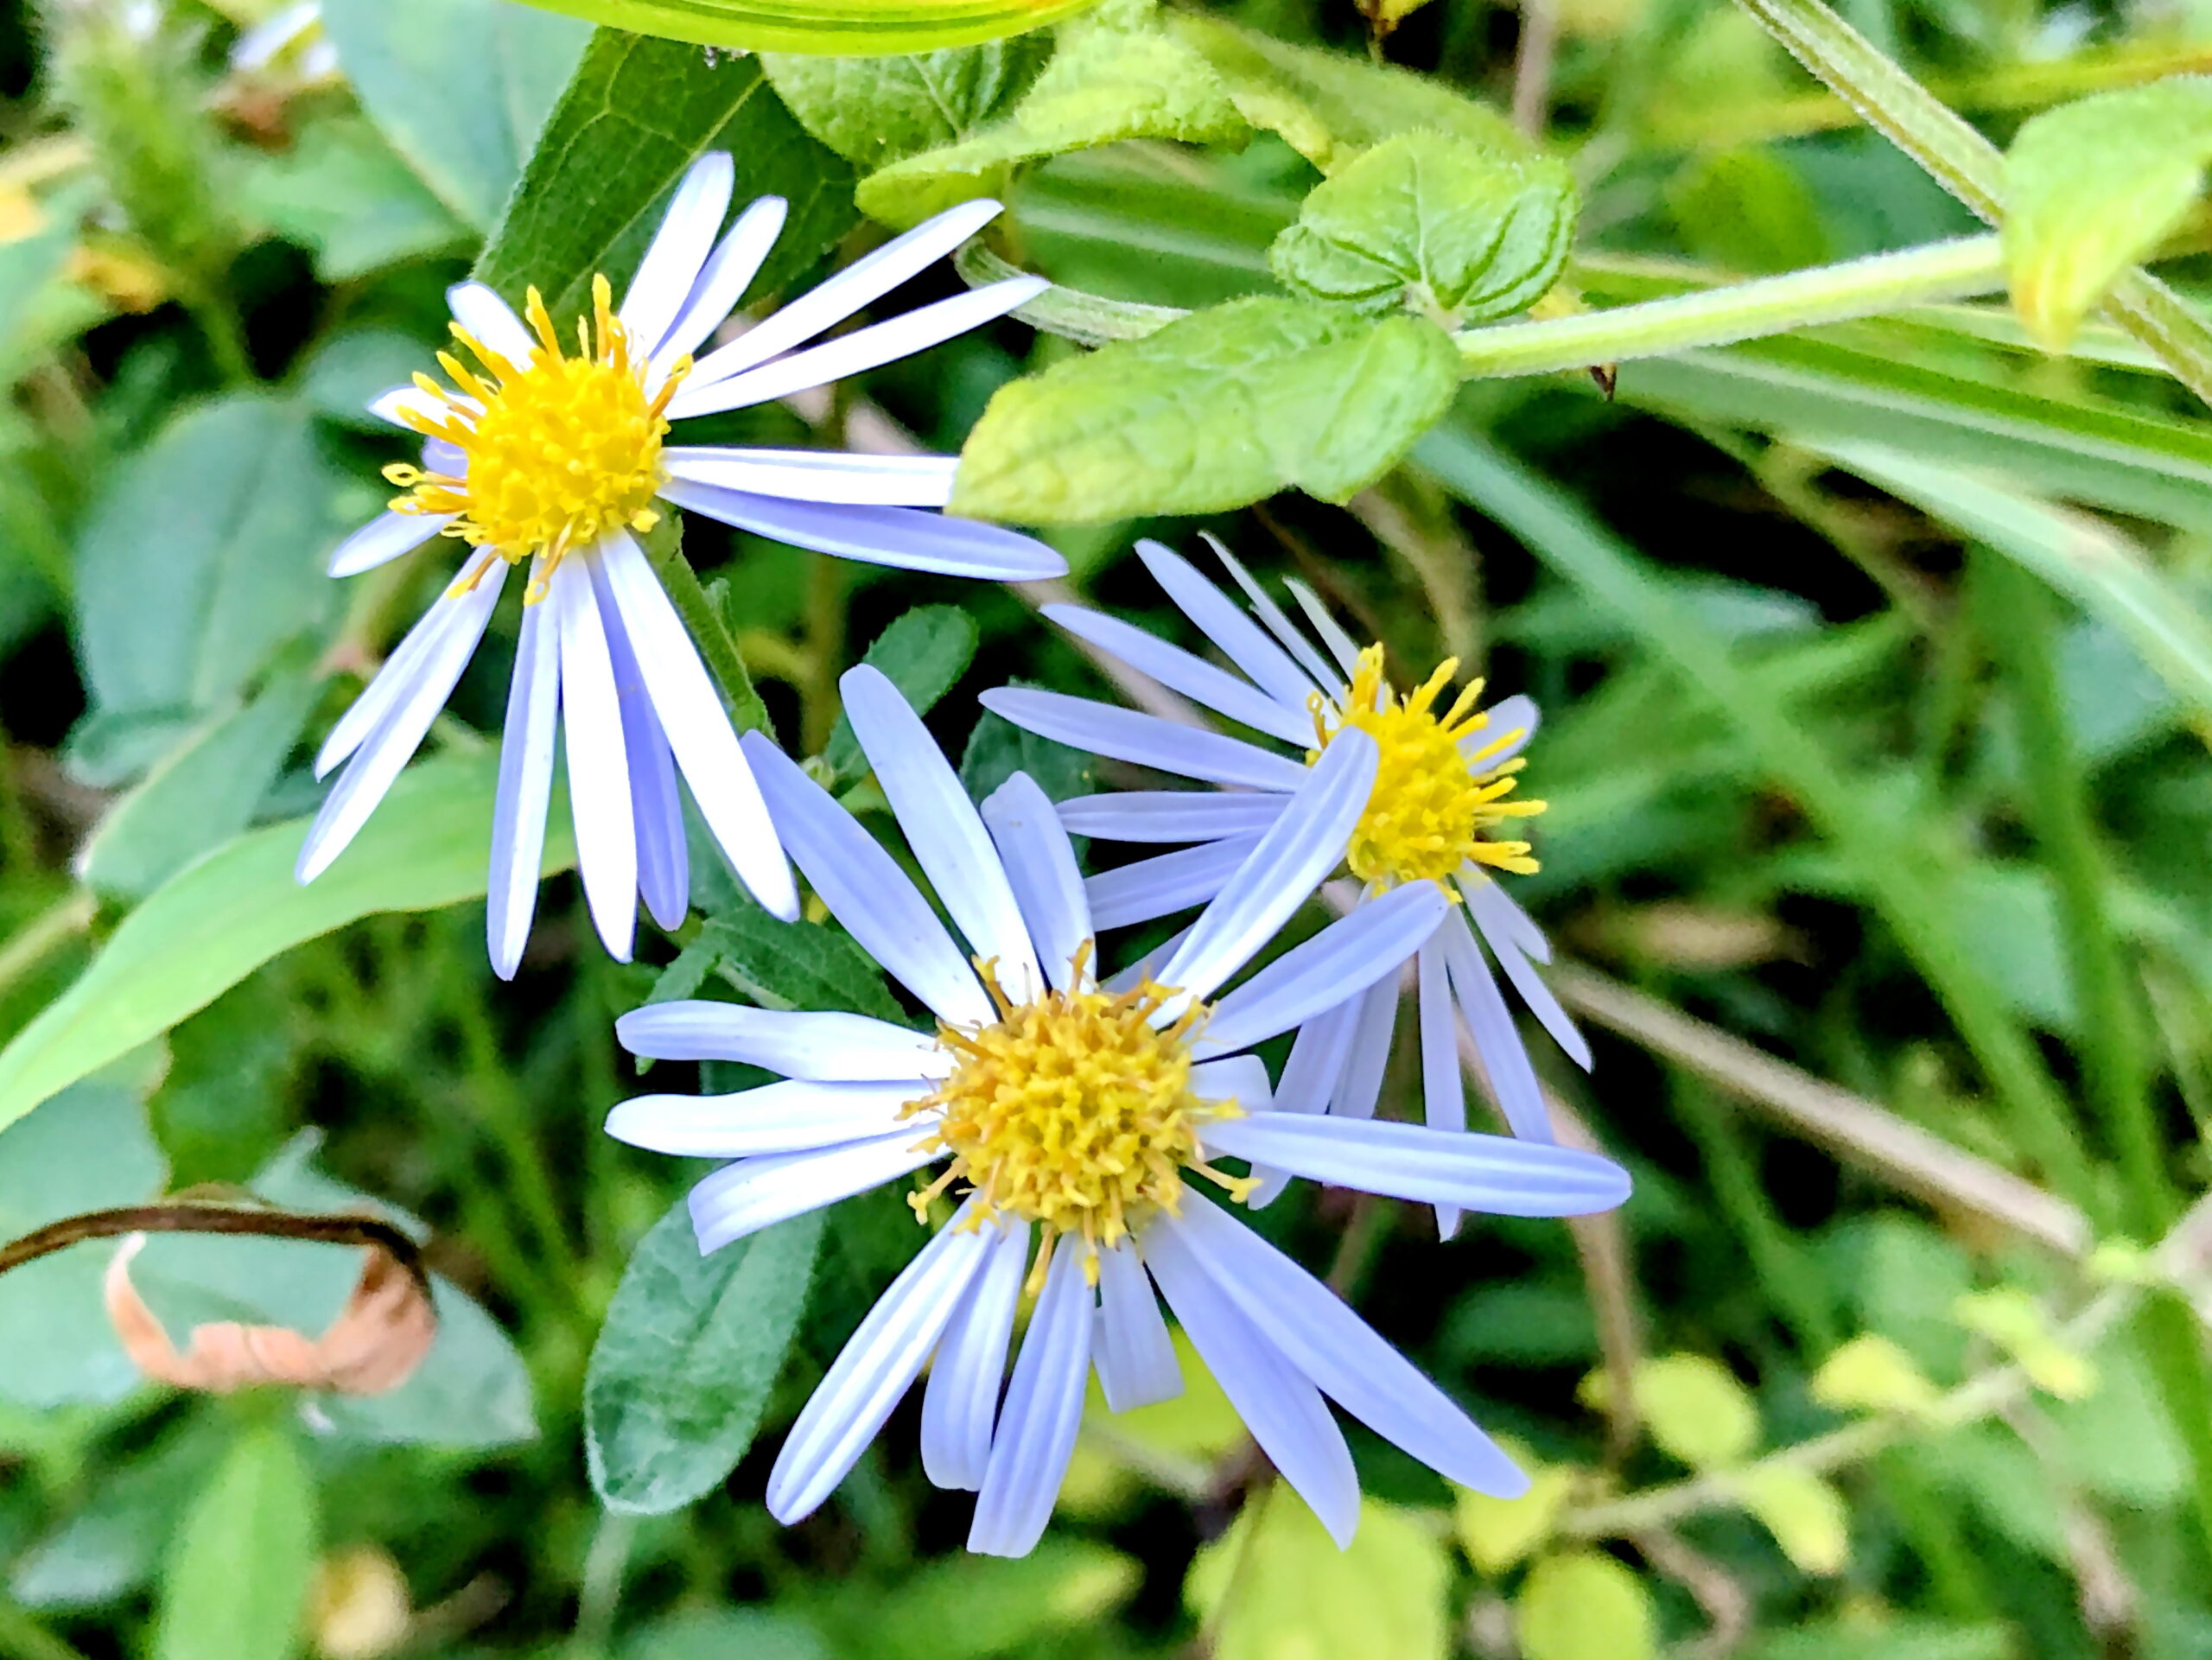 ノコンギク 野紺菊 キク科 シオン属 在来種 多年草 舌状花と筒状花 淡青紫色の花 痩果